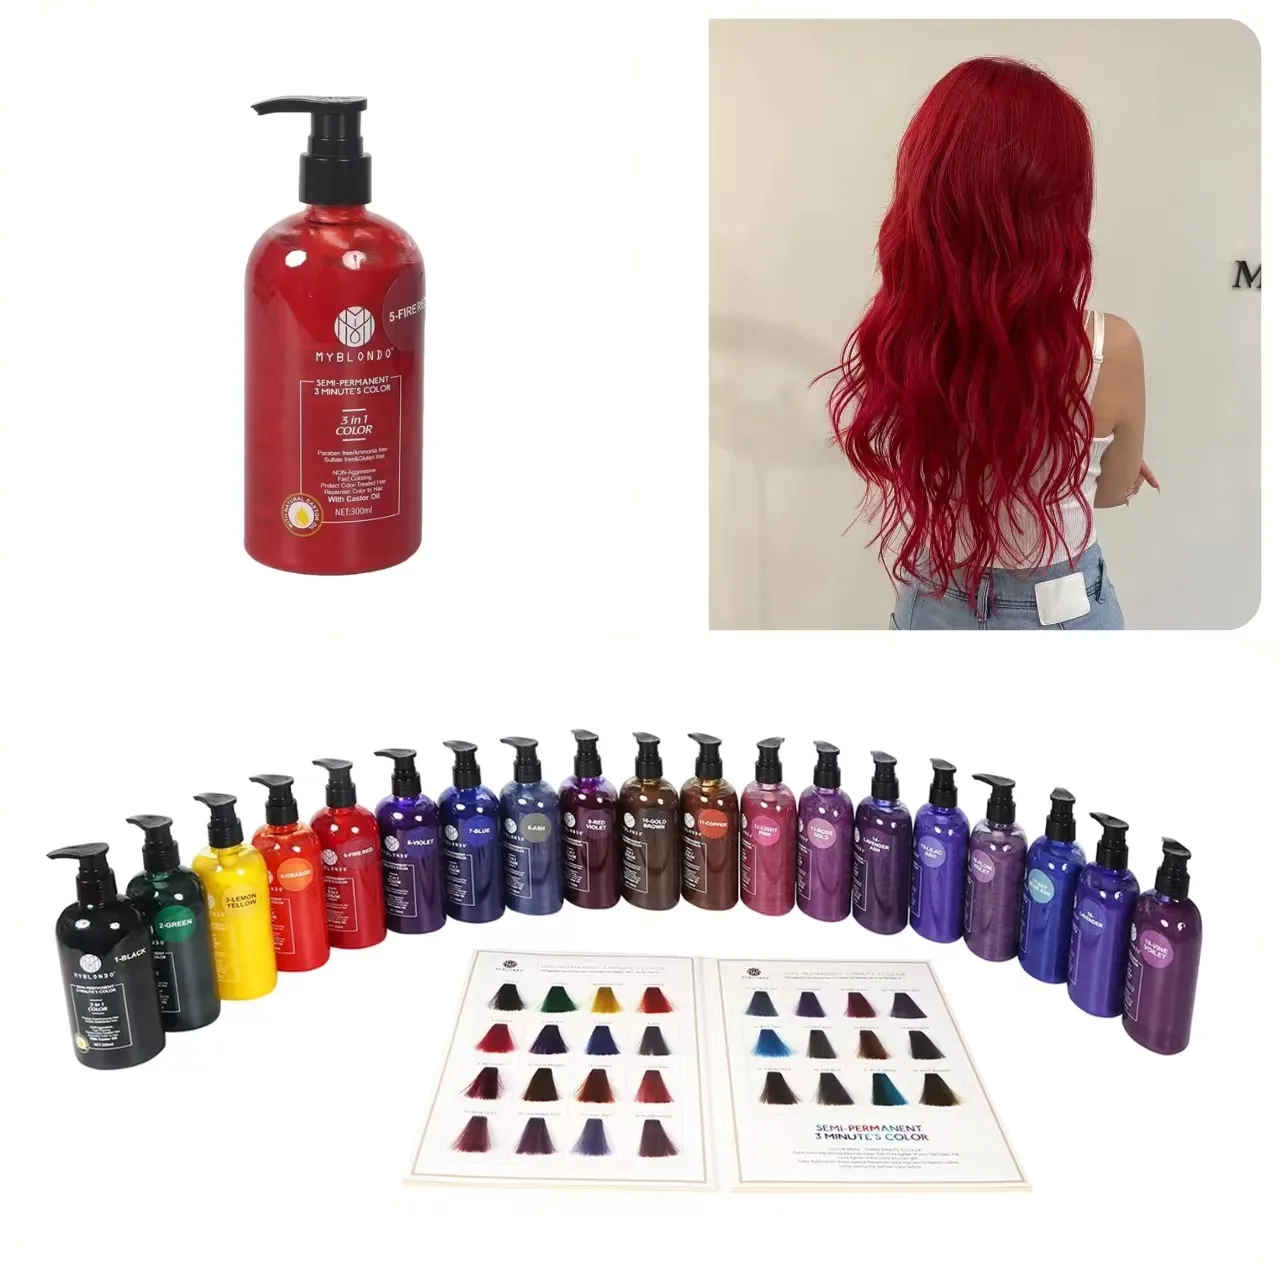 Shampoo de tintura de cabelo 28 cores para mulheres, tratamento de coloração rápida com linha completa de cosméticos para cabelos